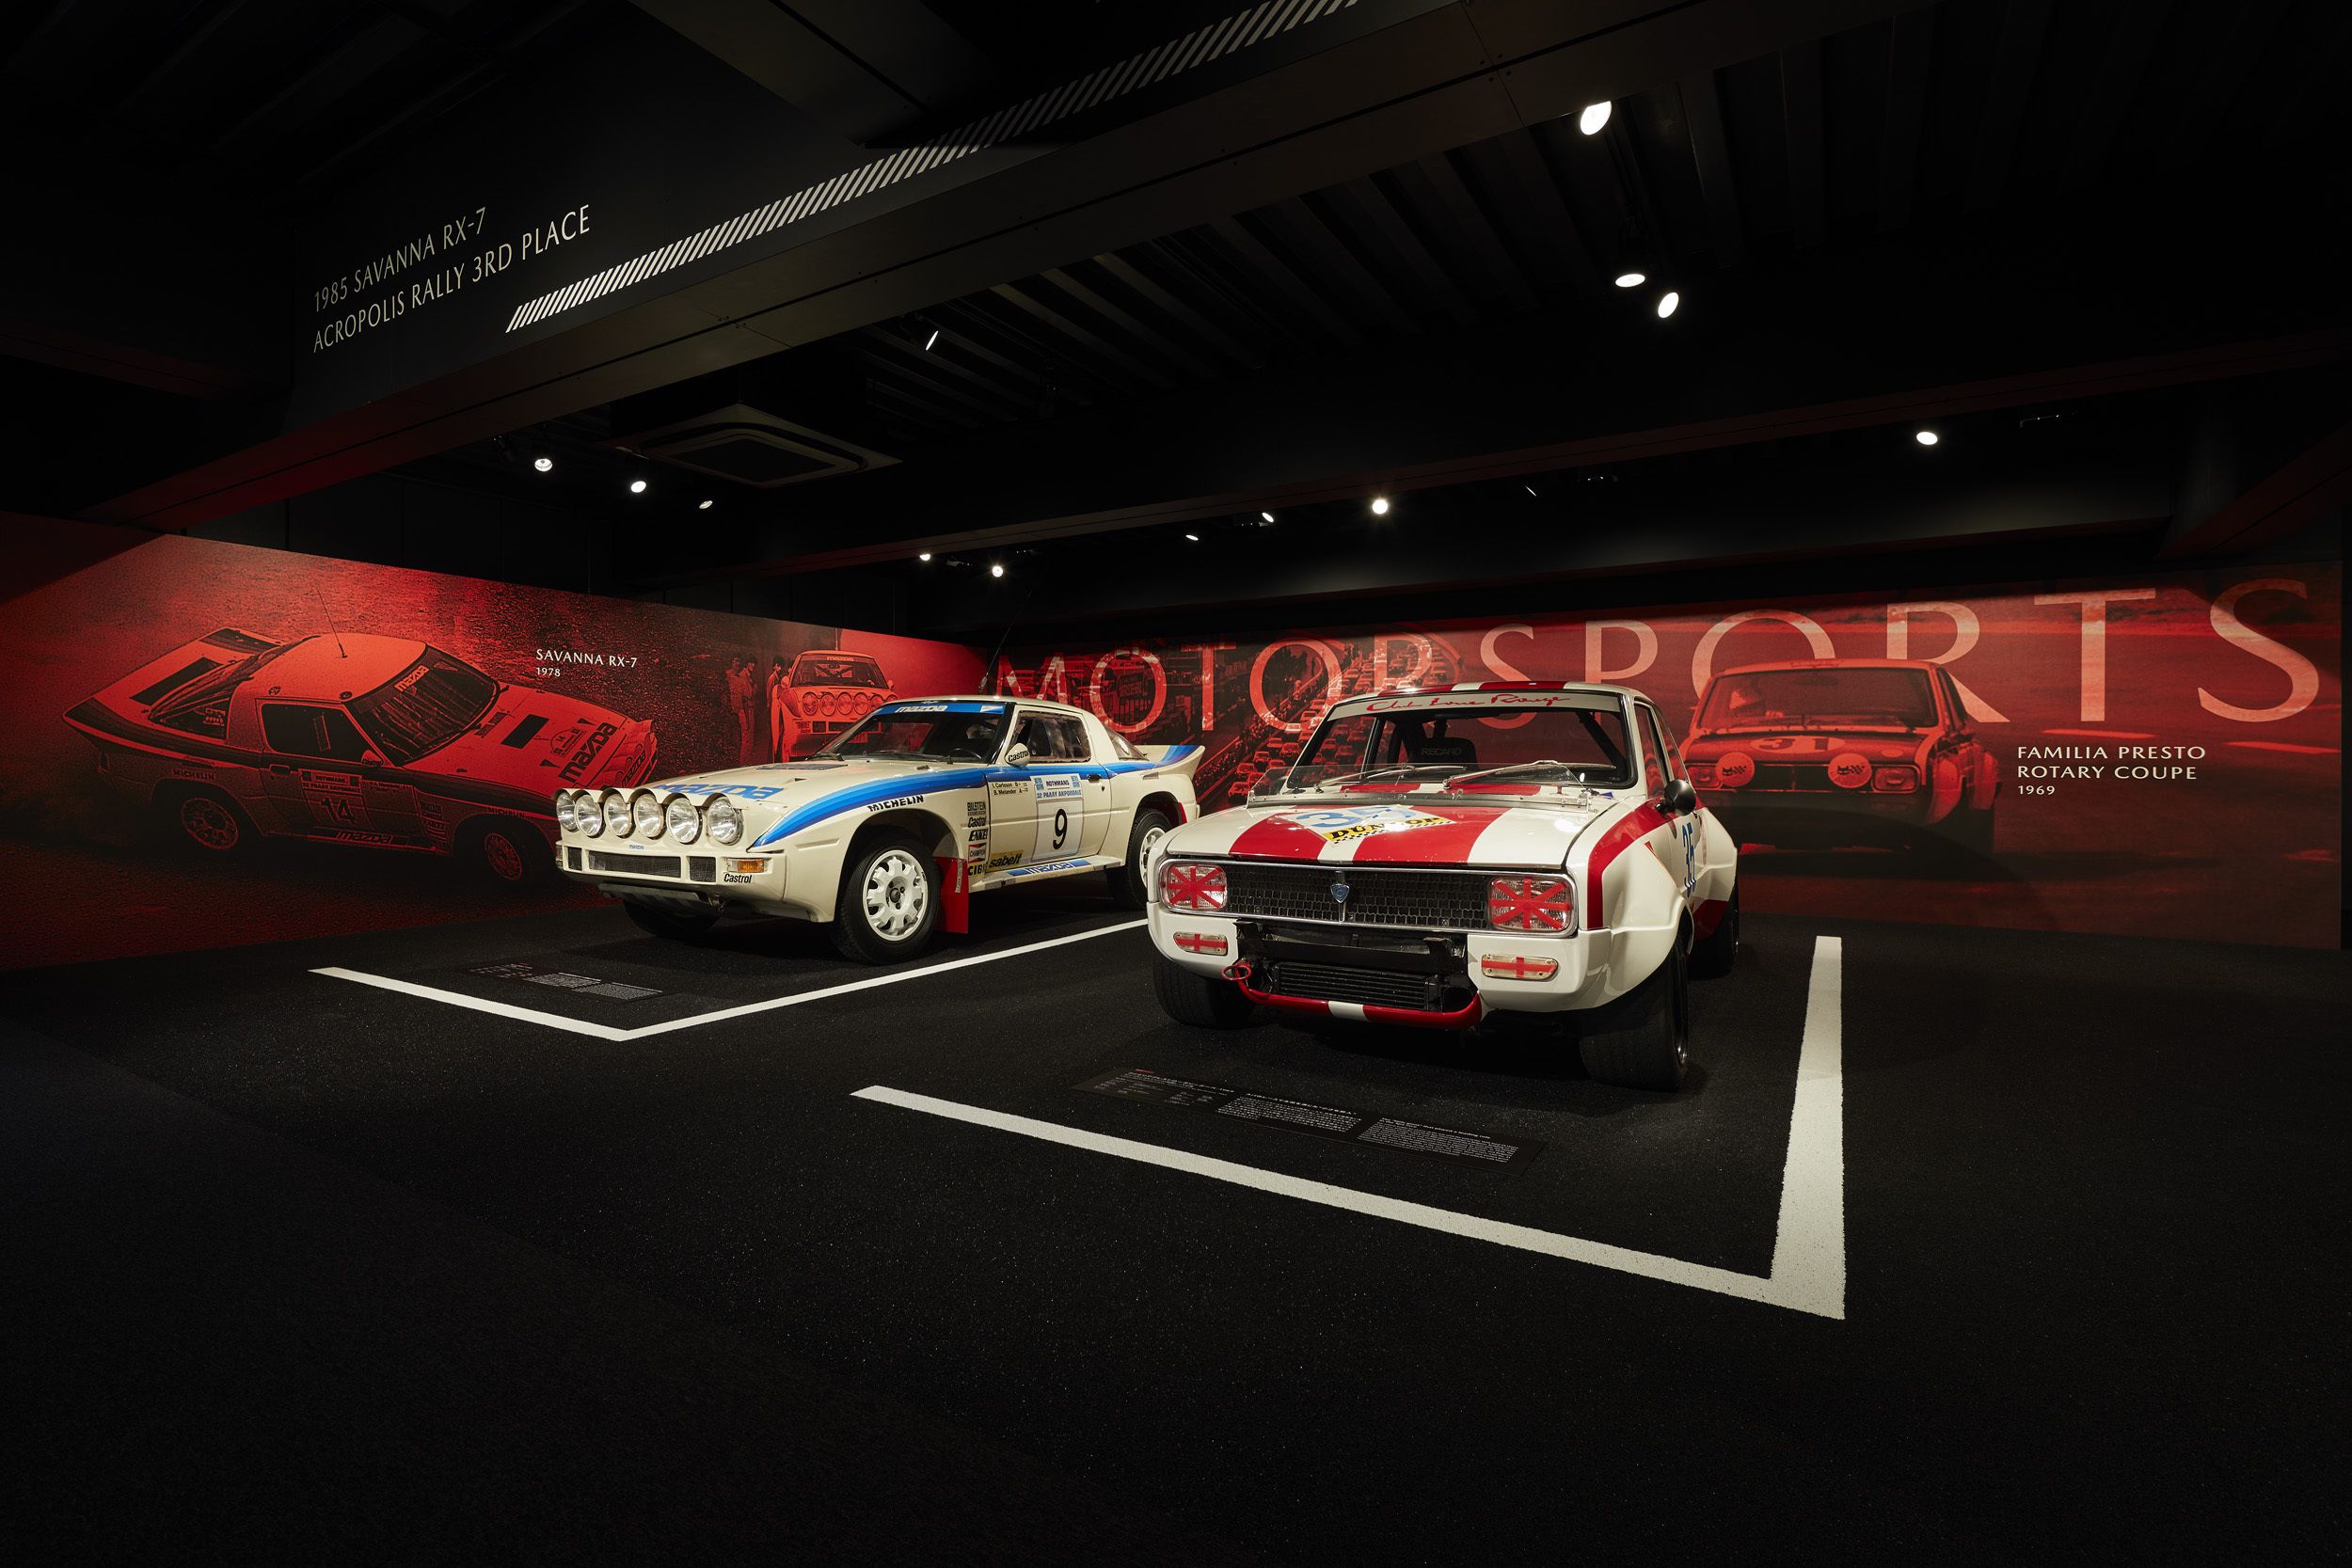 Η Mazda μας υποδέχεται στο ανακαινισμένο της Μουσείο